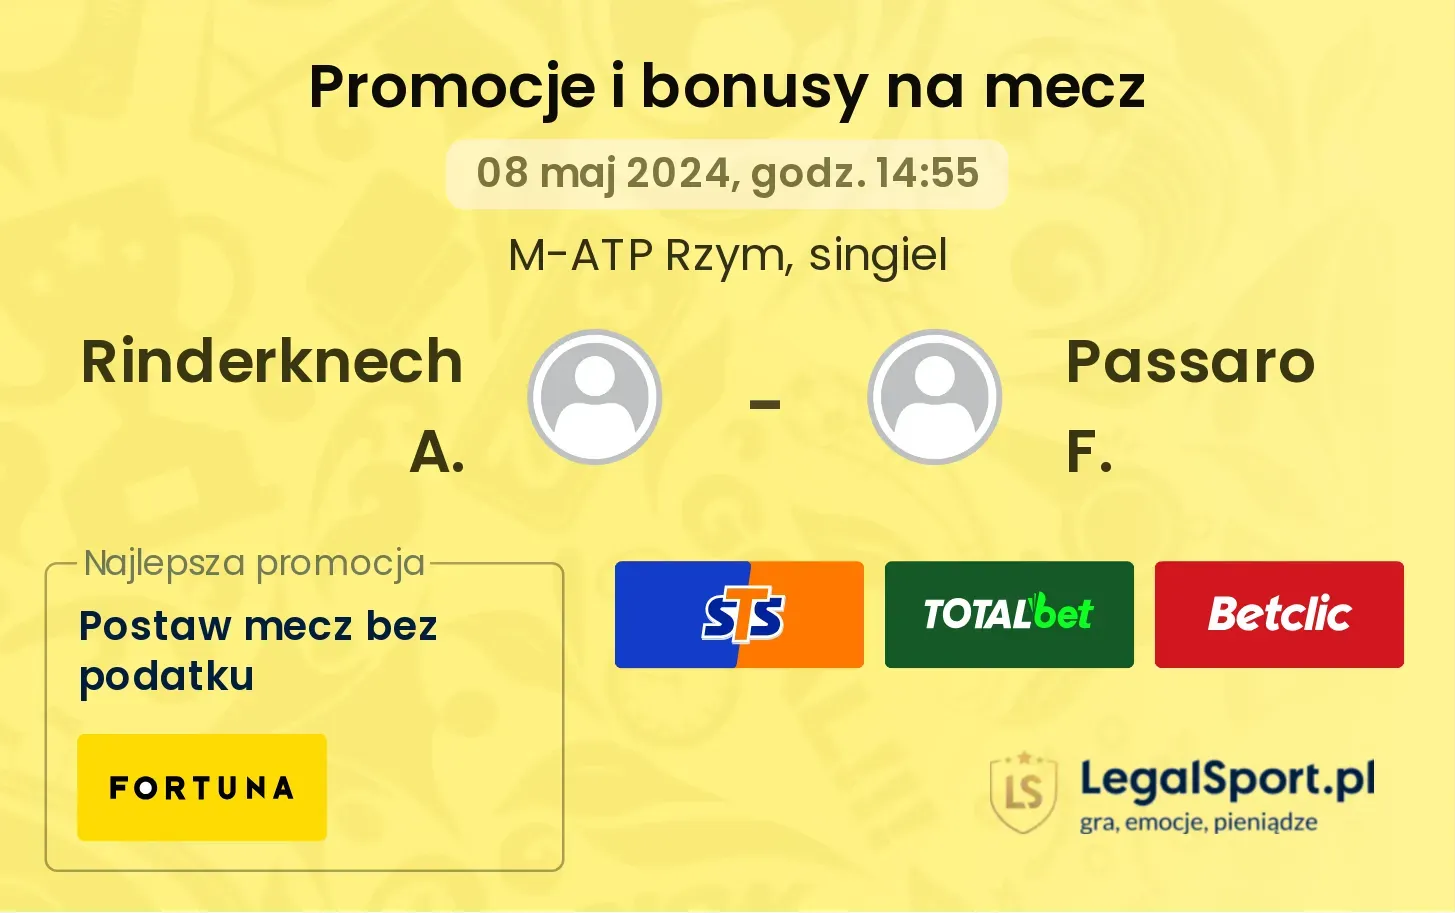 Rinderknech A. - Passaro F. promocje bonusy na mecz